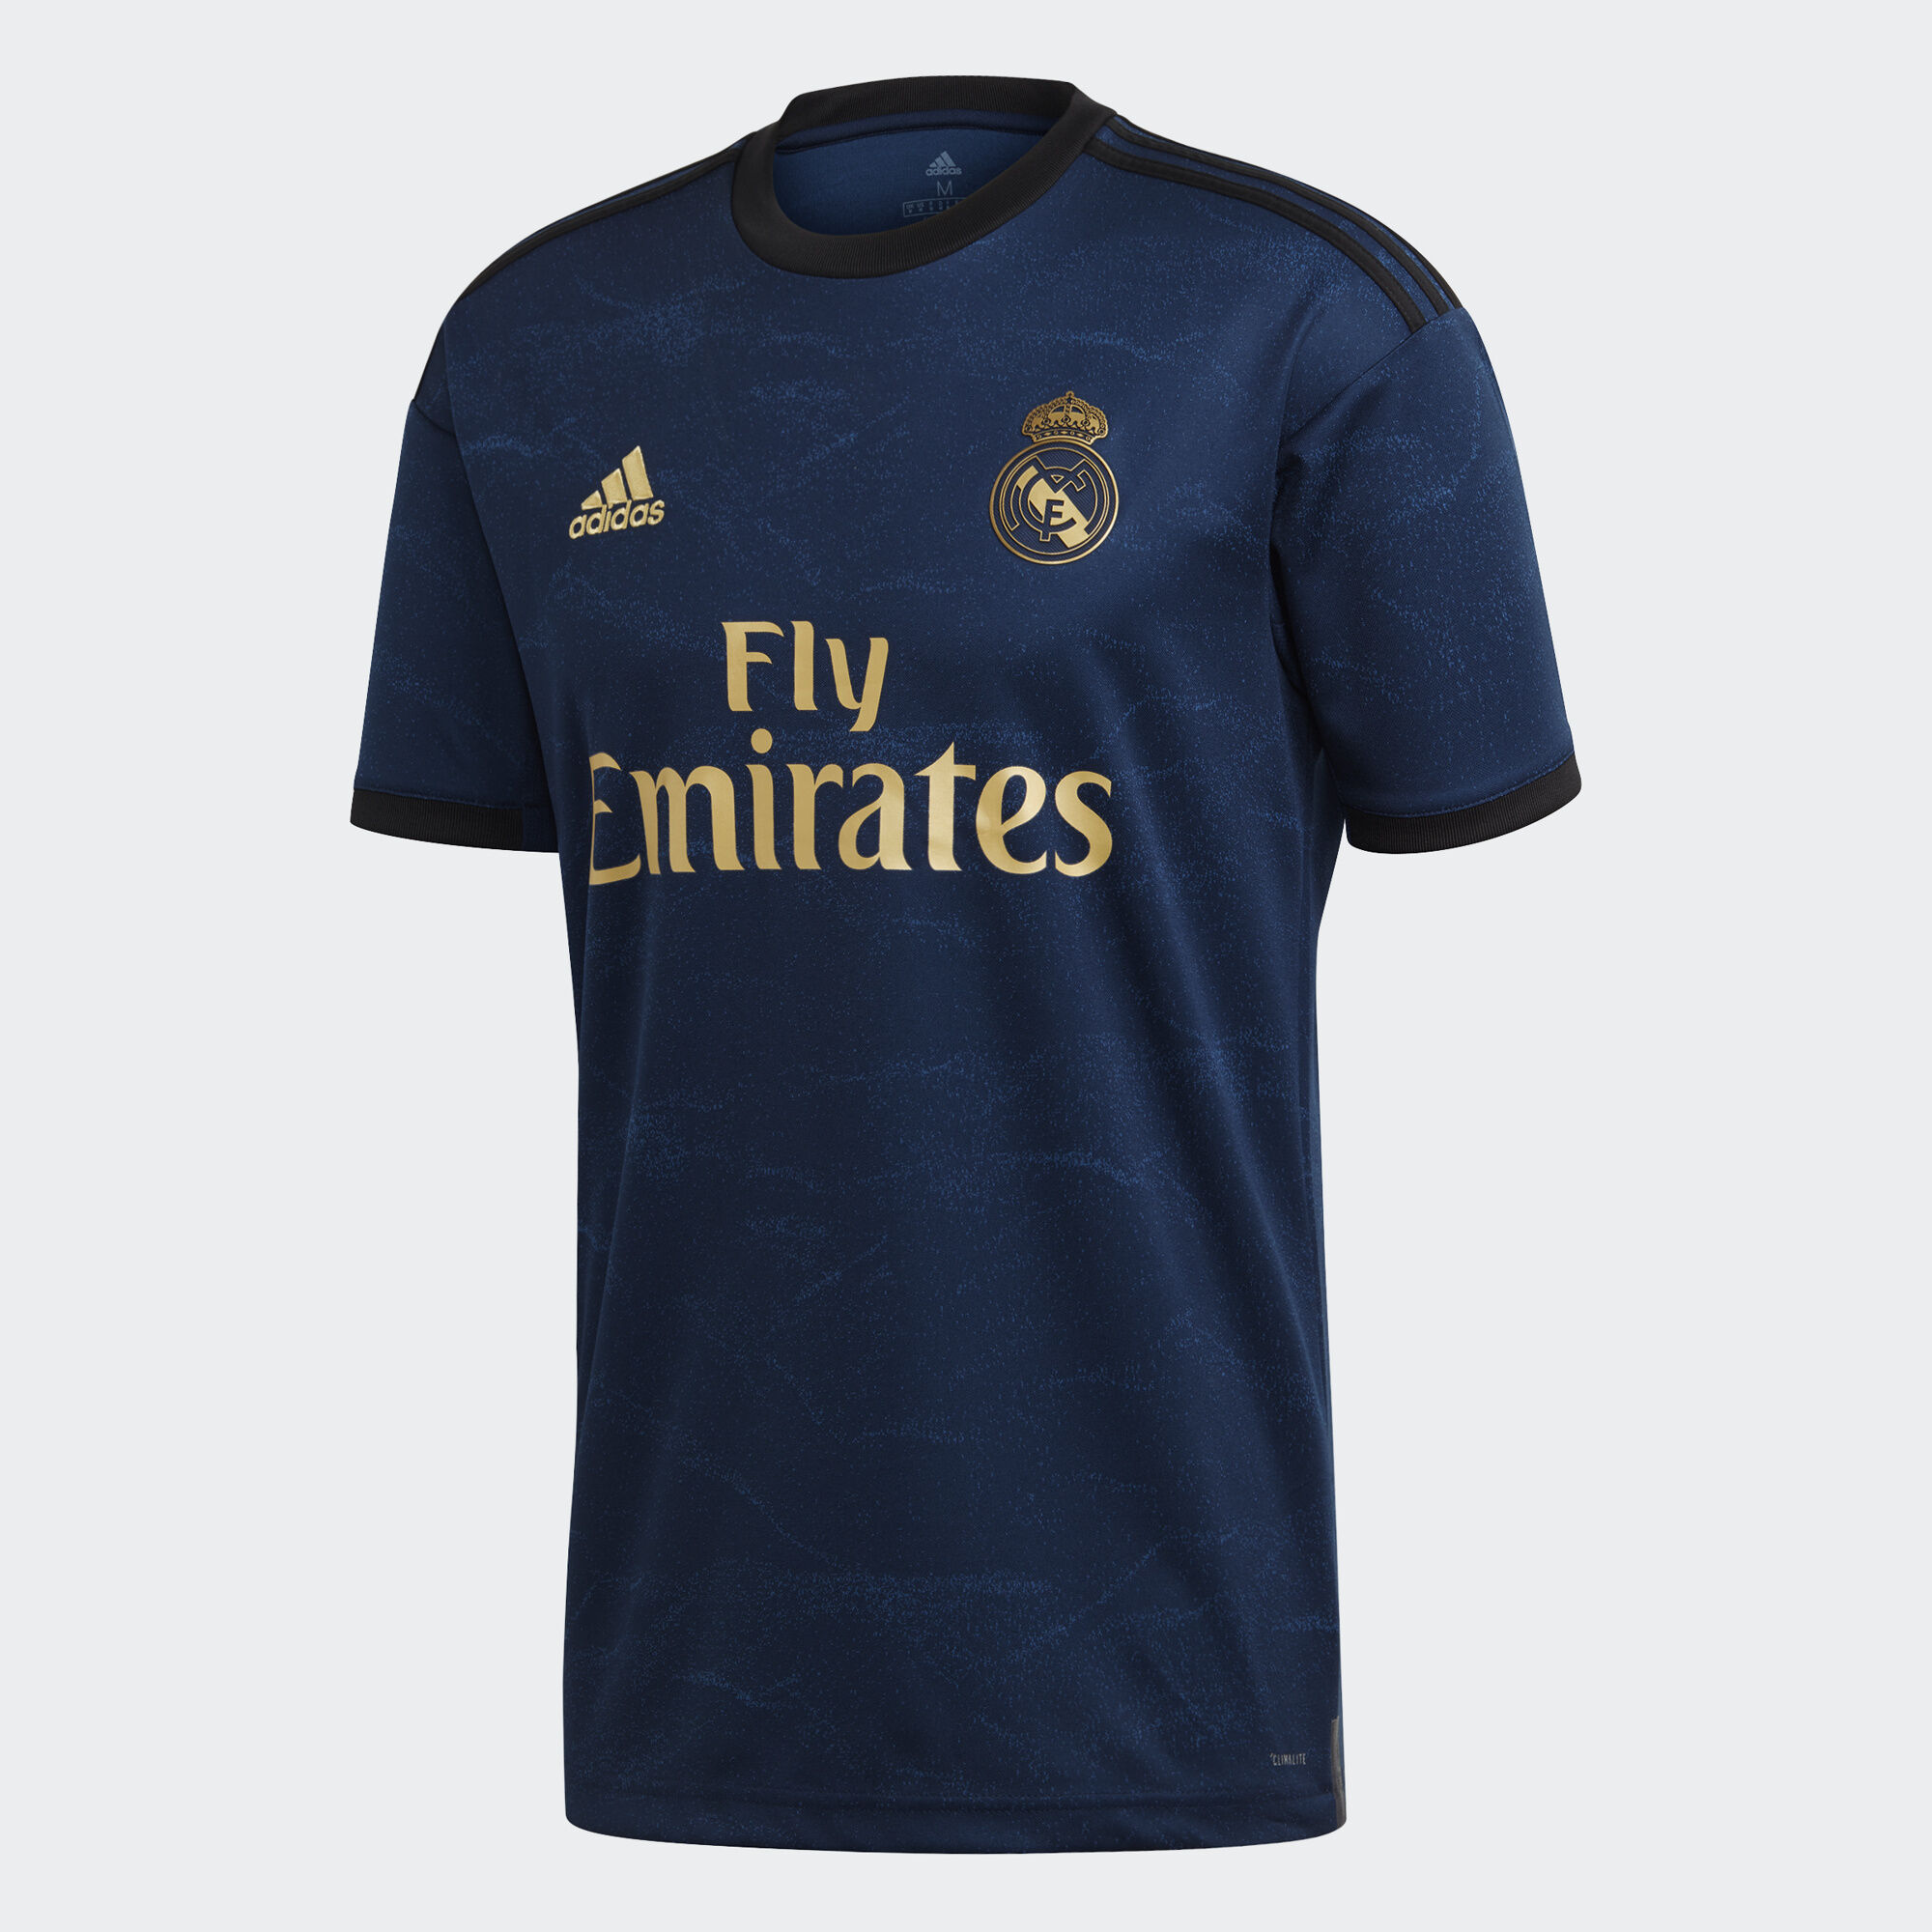 Real madrid купить футболку. Футболка Реал Мадрид 2020. Футбольная форма Реал Мадрид. Реал Мадрид форма 2019. Футбольная форма Реал Мадрид 2018 2019.